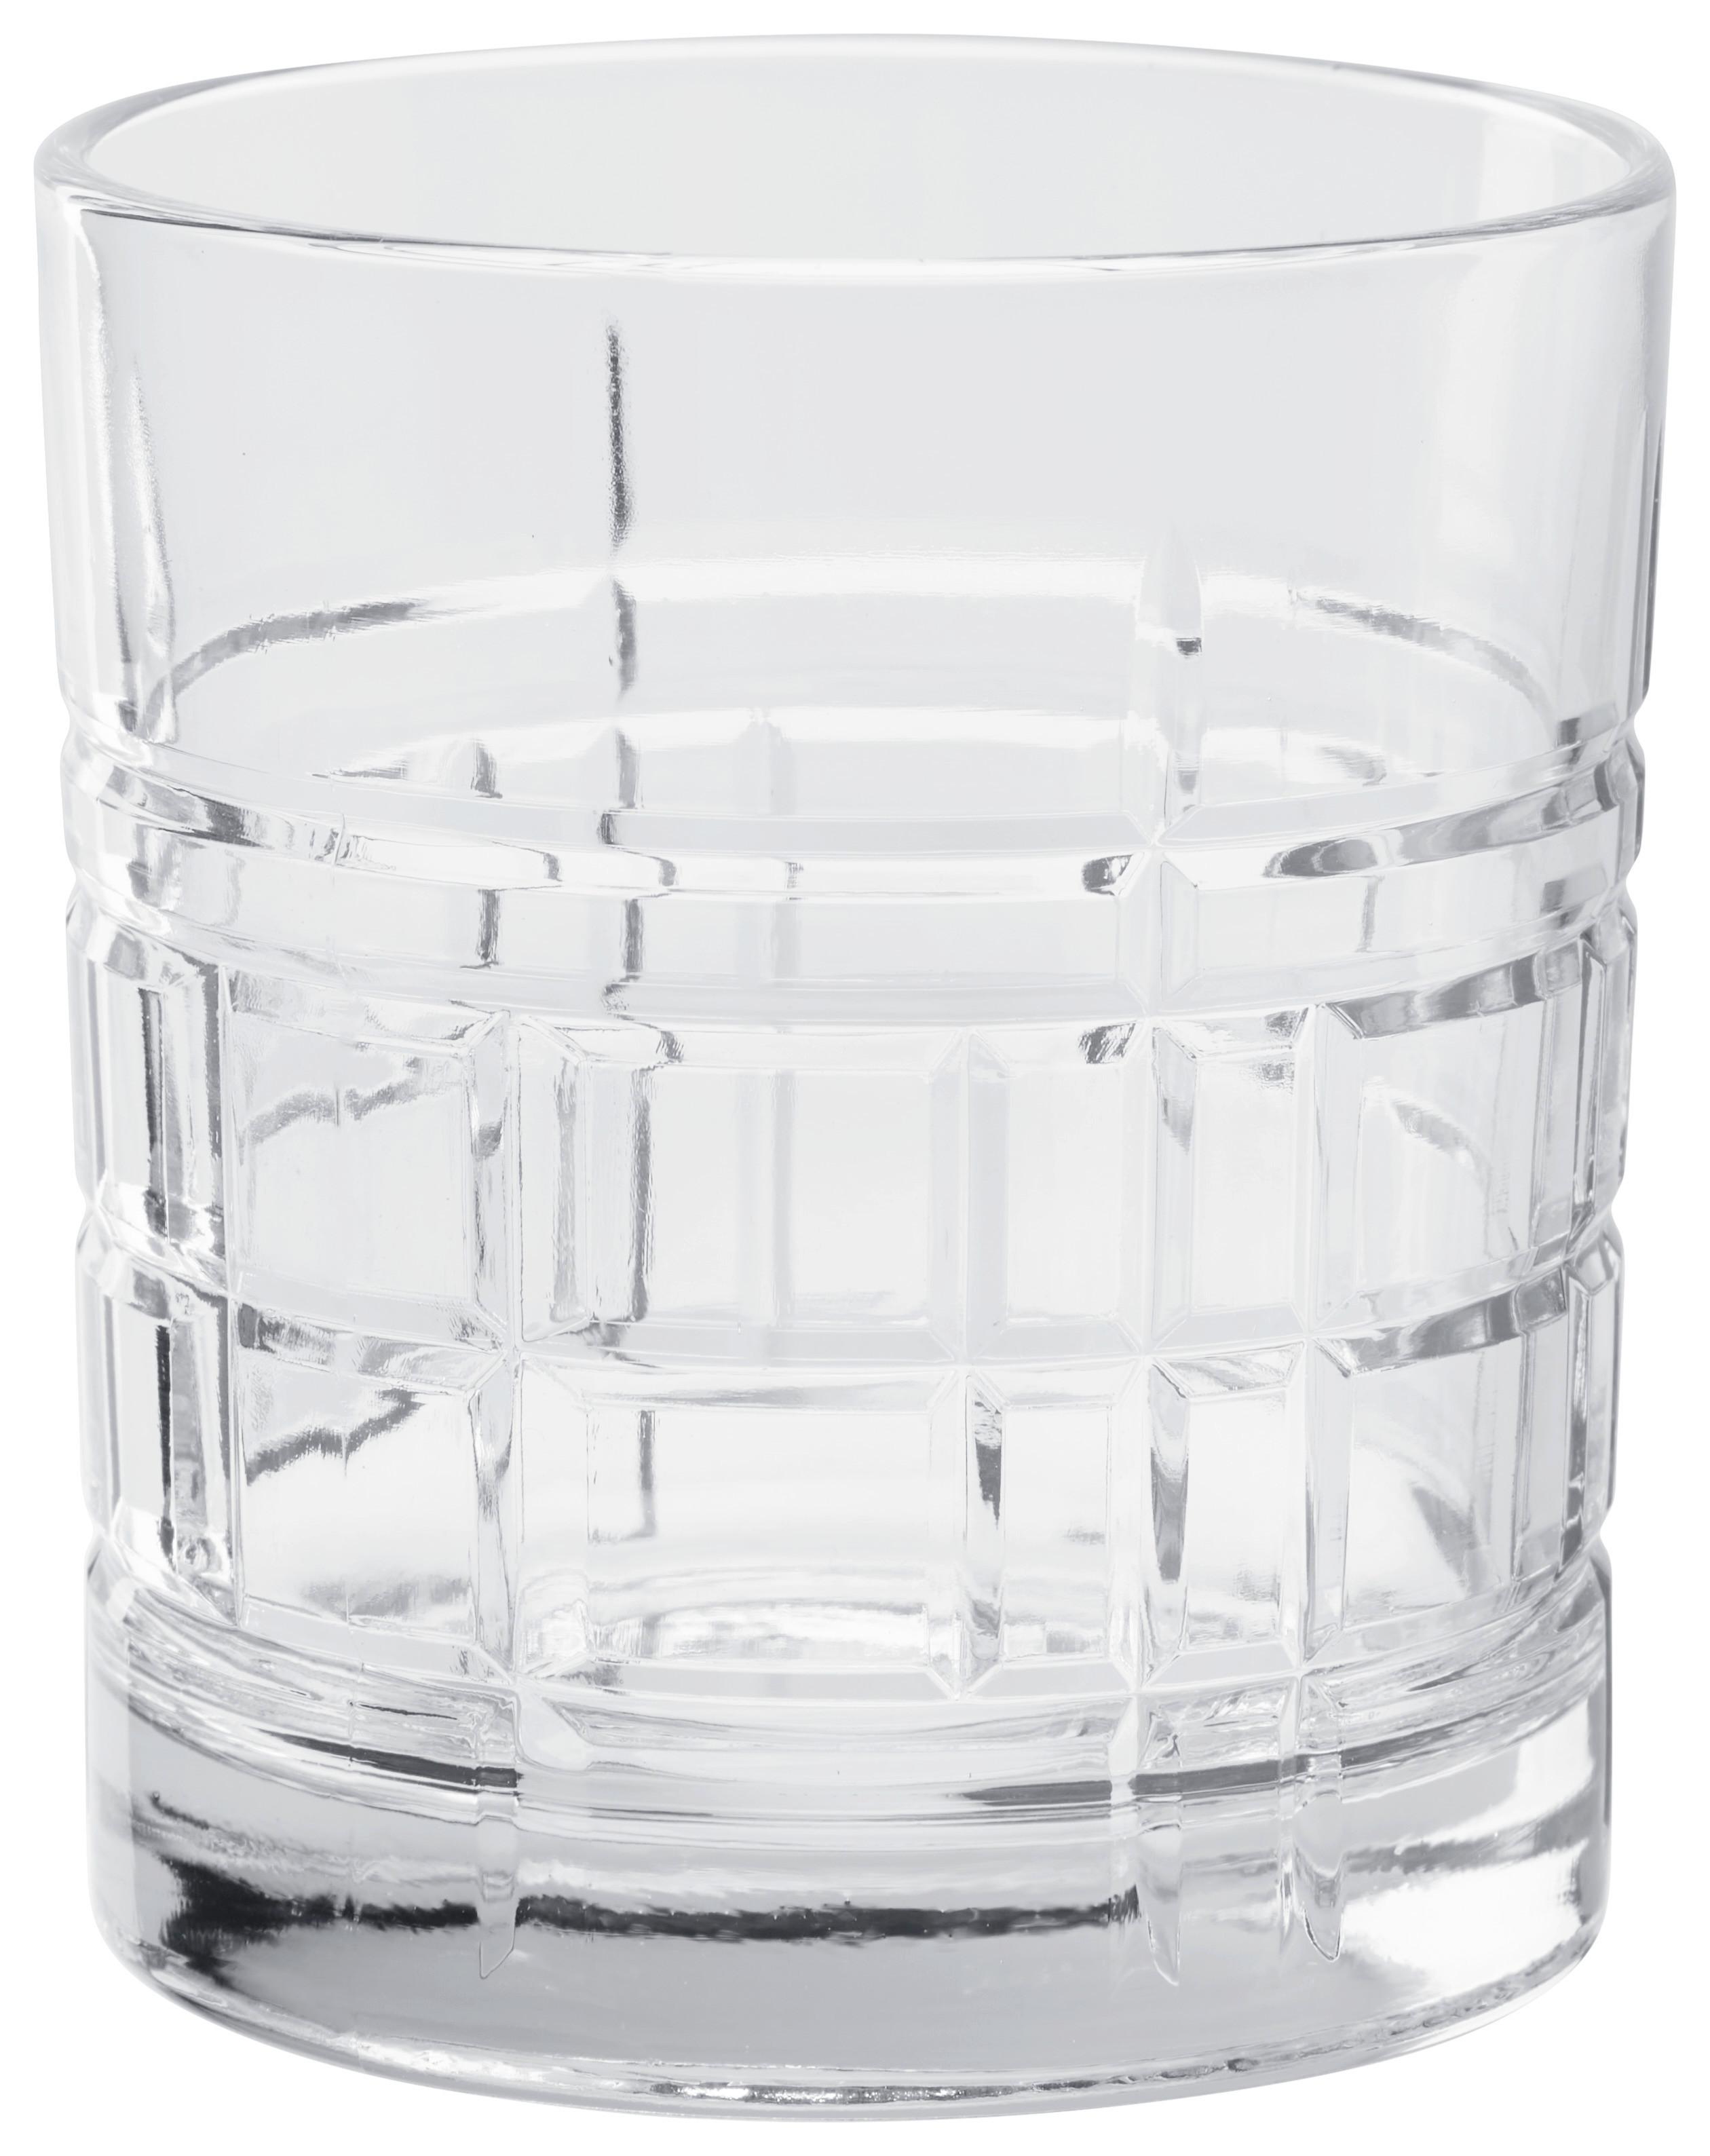 Pohár Na Whisky Skye, 325ml - číra, Konvenčný, sklo (8,4/9cm) - Modern Living